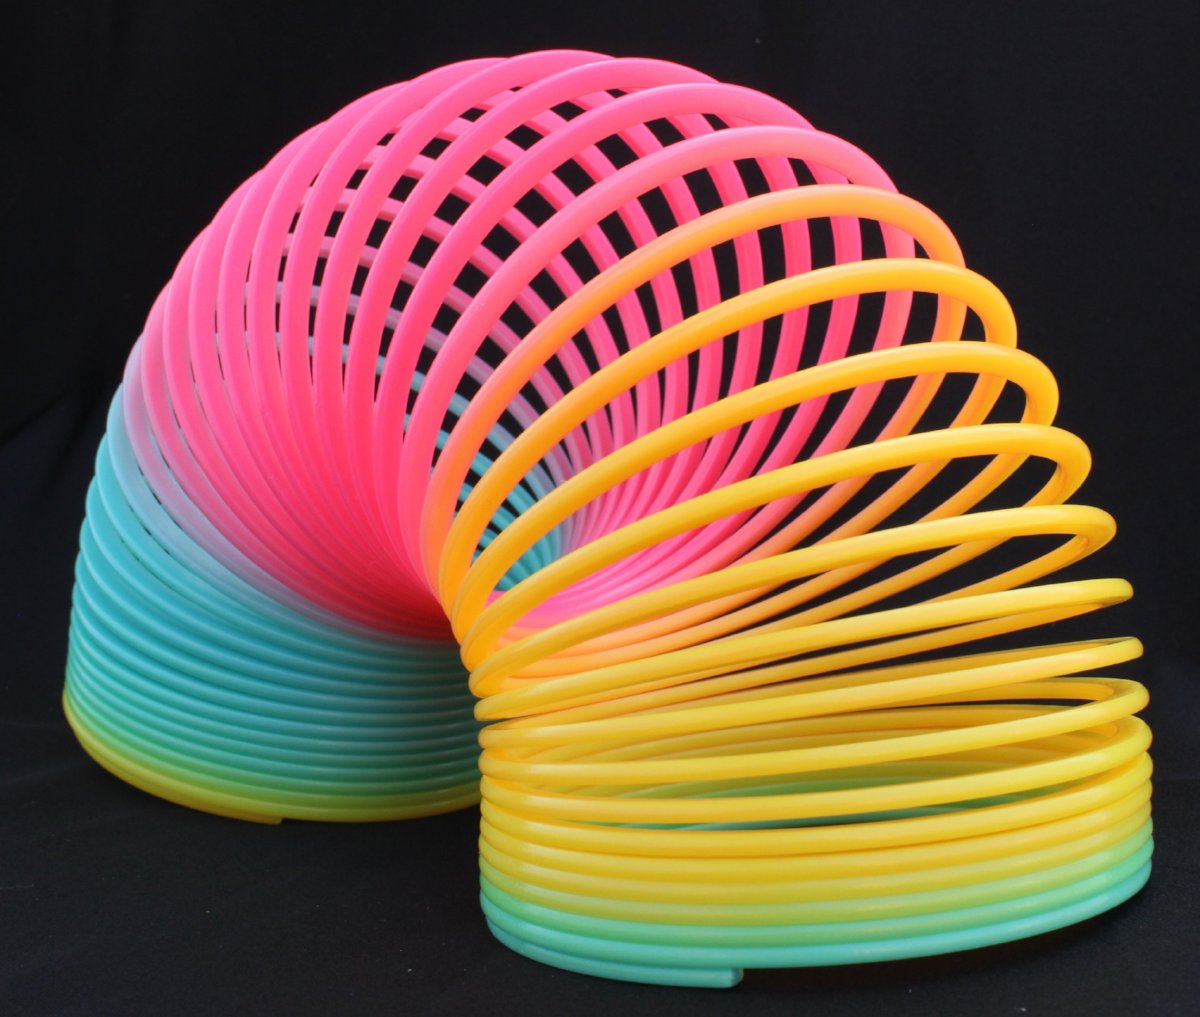 The Original HyperSpring™ (for Slinky Tricks!) – HyperSpring Toys